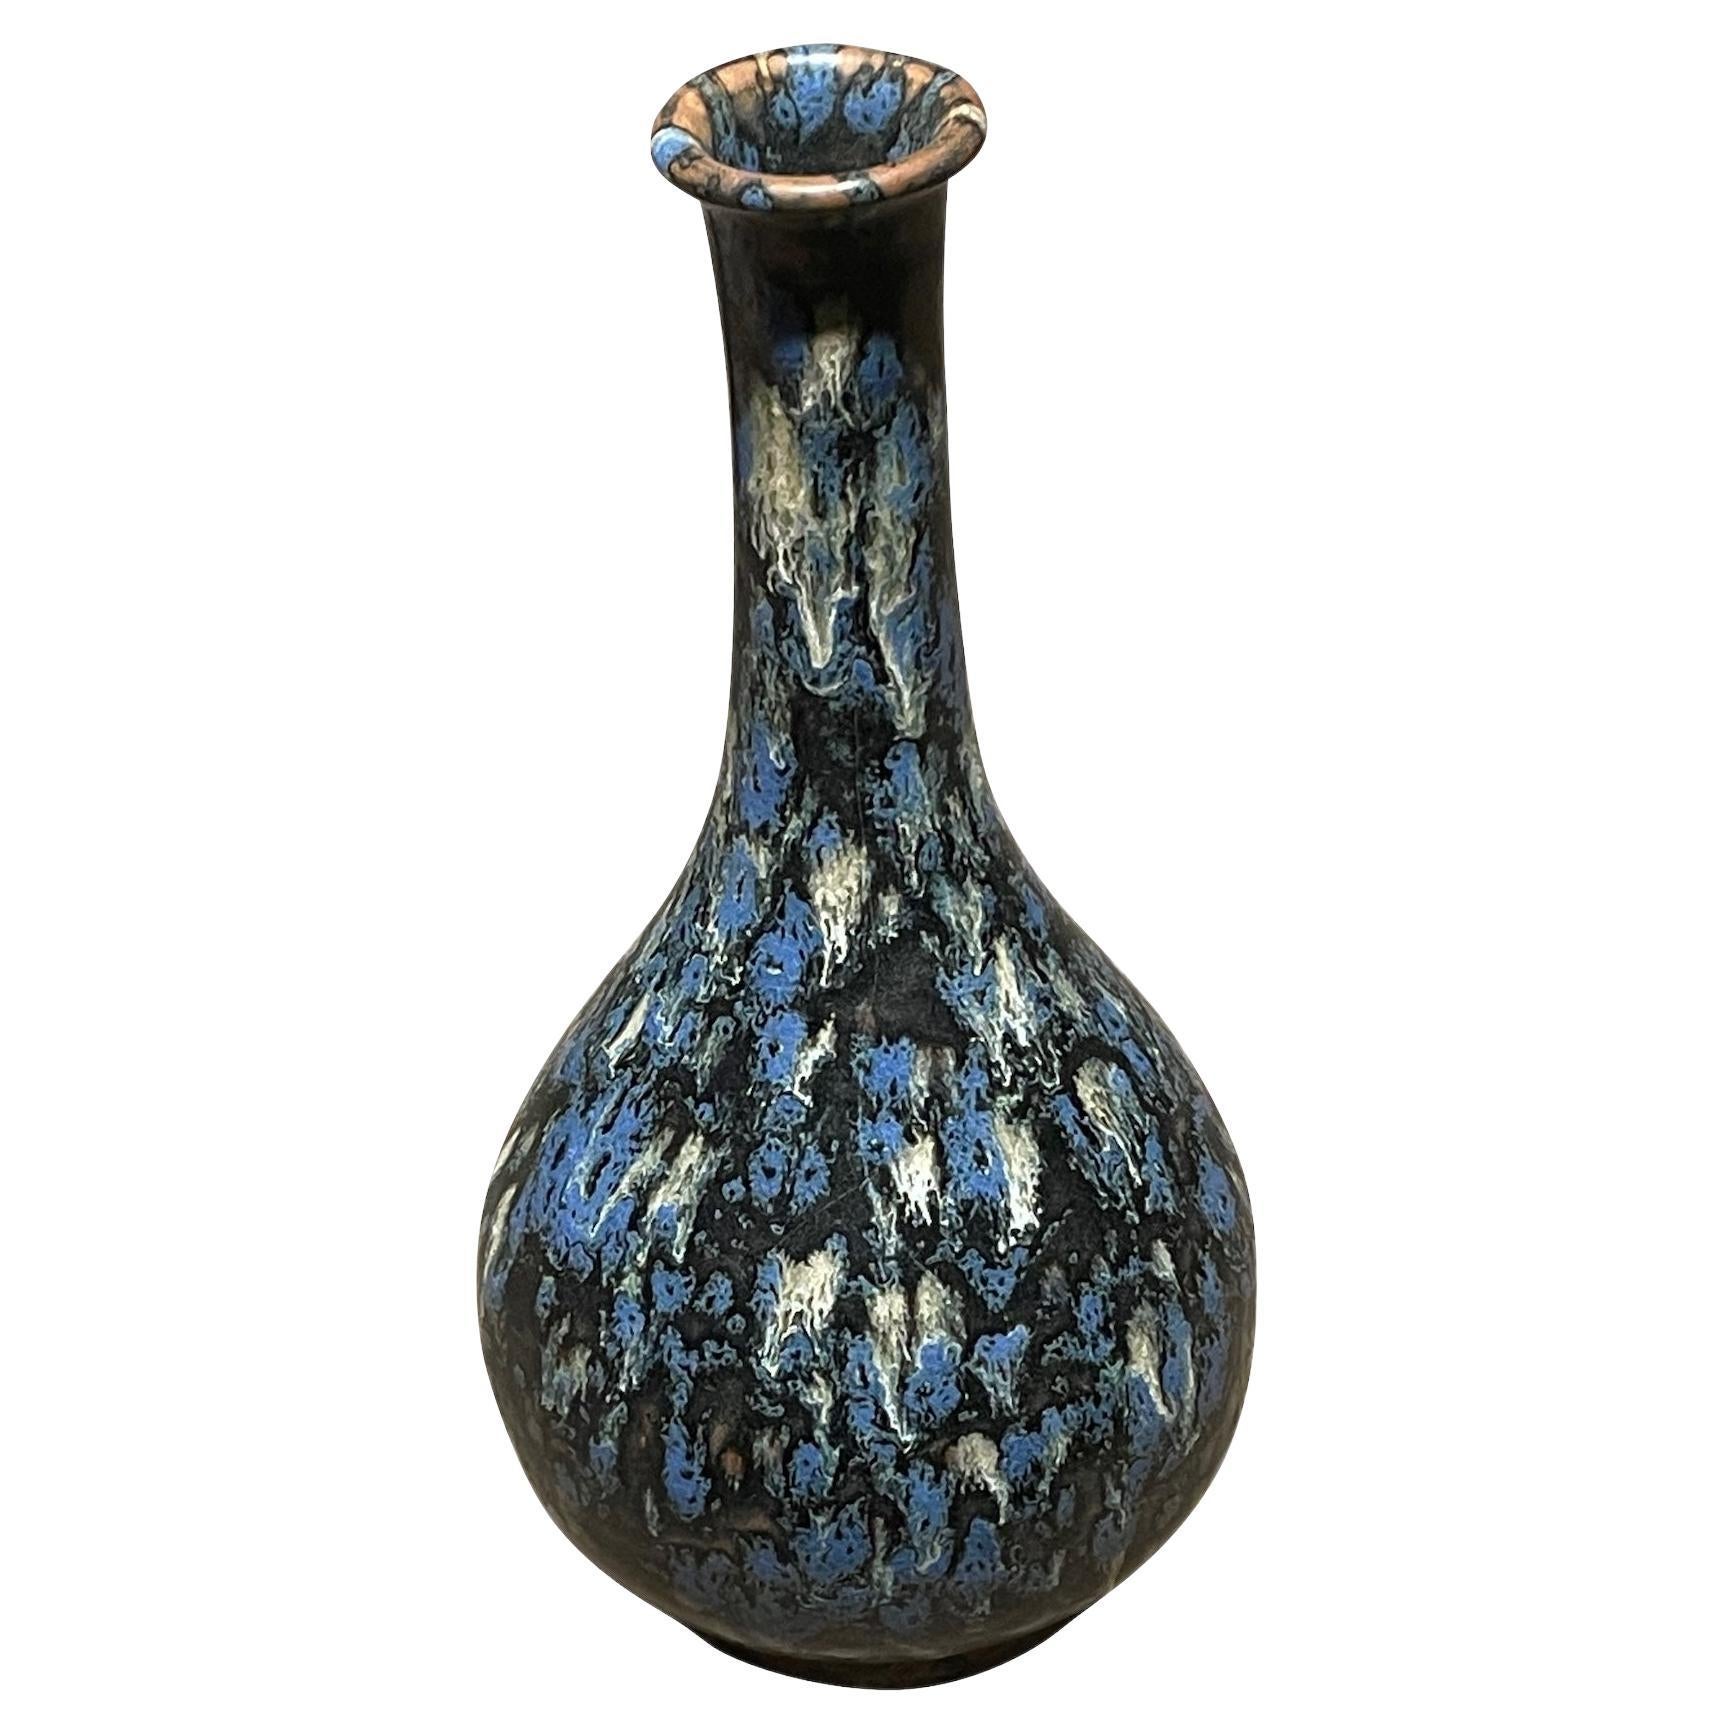 Vase chinois contemporain à haut col fin et glaçure noire, bleue et blanche.
L'un des nombreux exemplaires de la Collection Sously de glaçures similaires de formes diverses.
